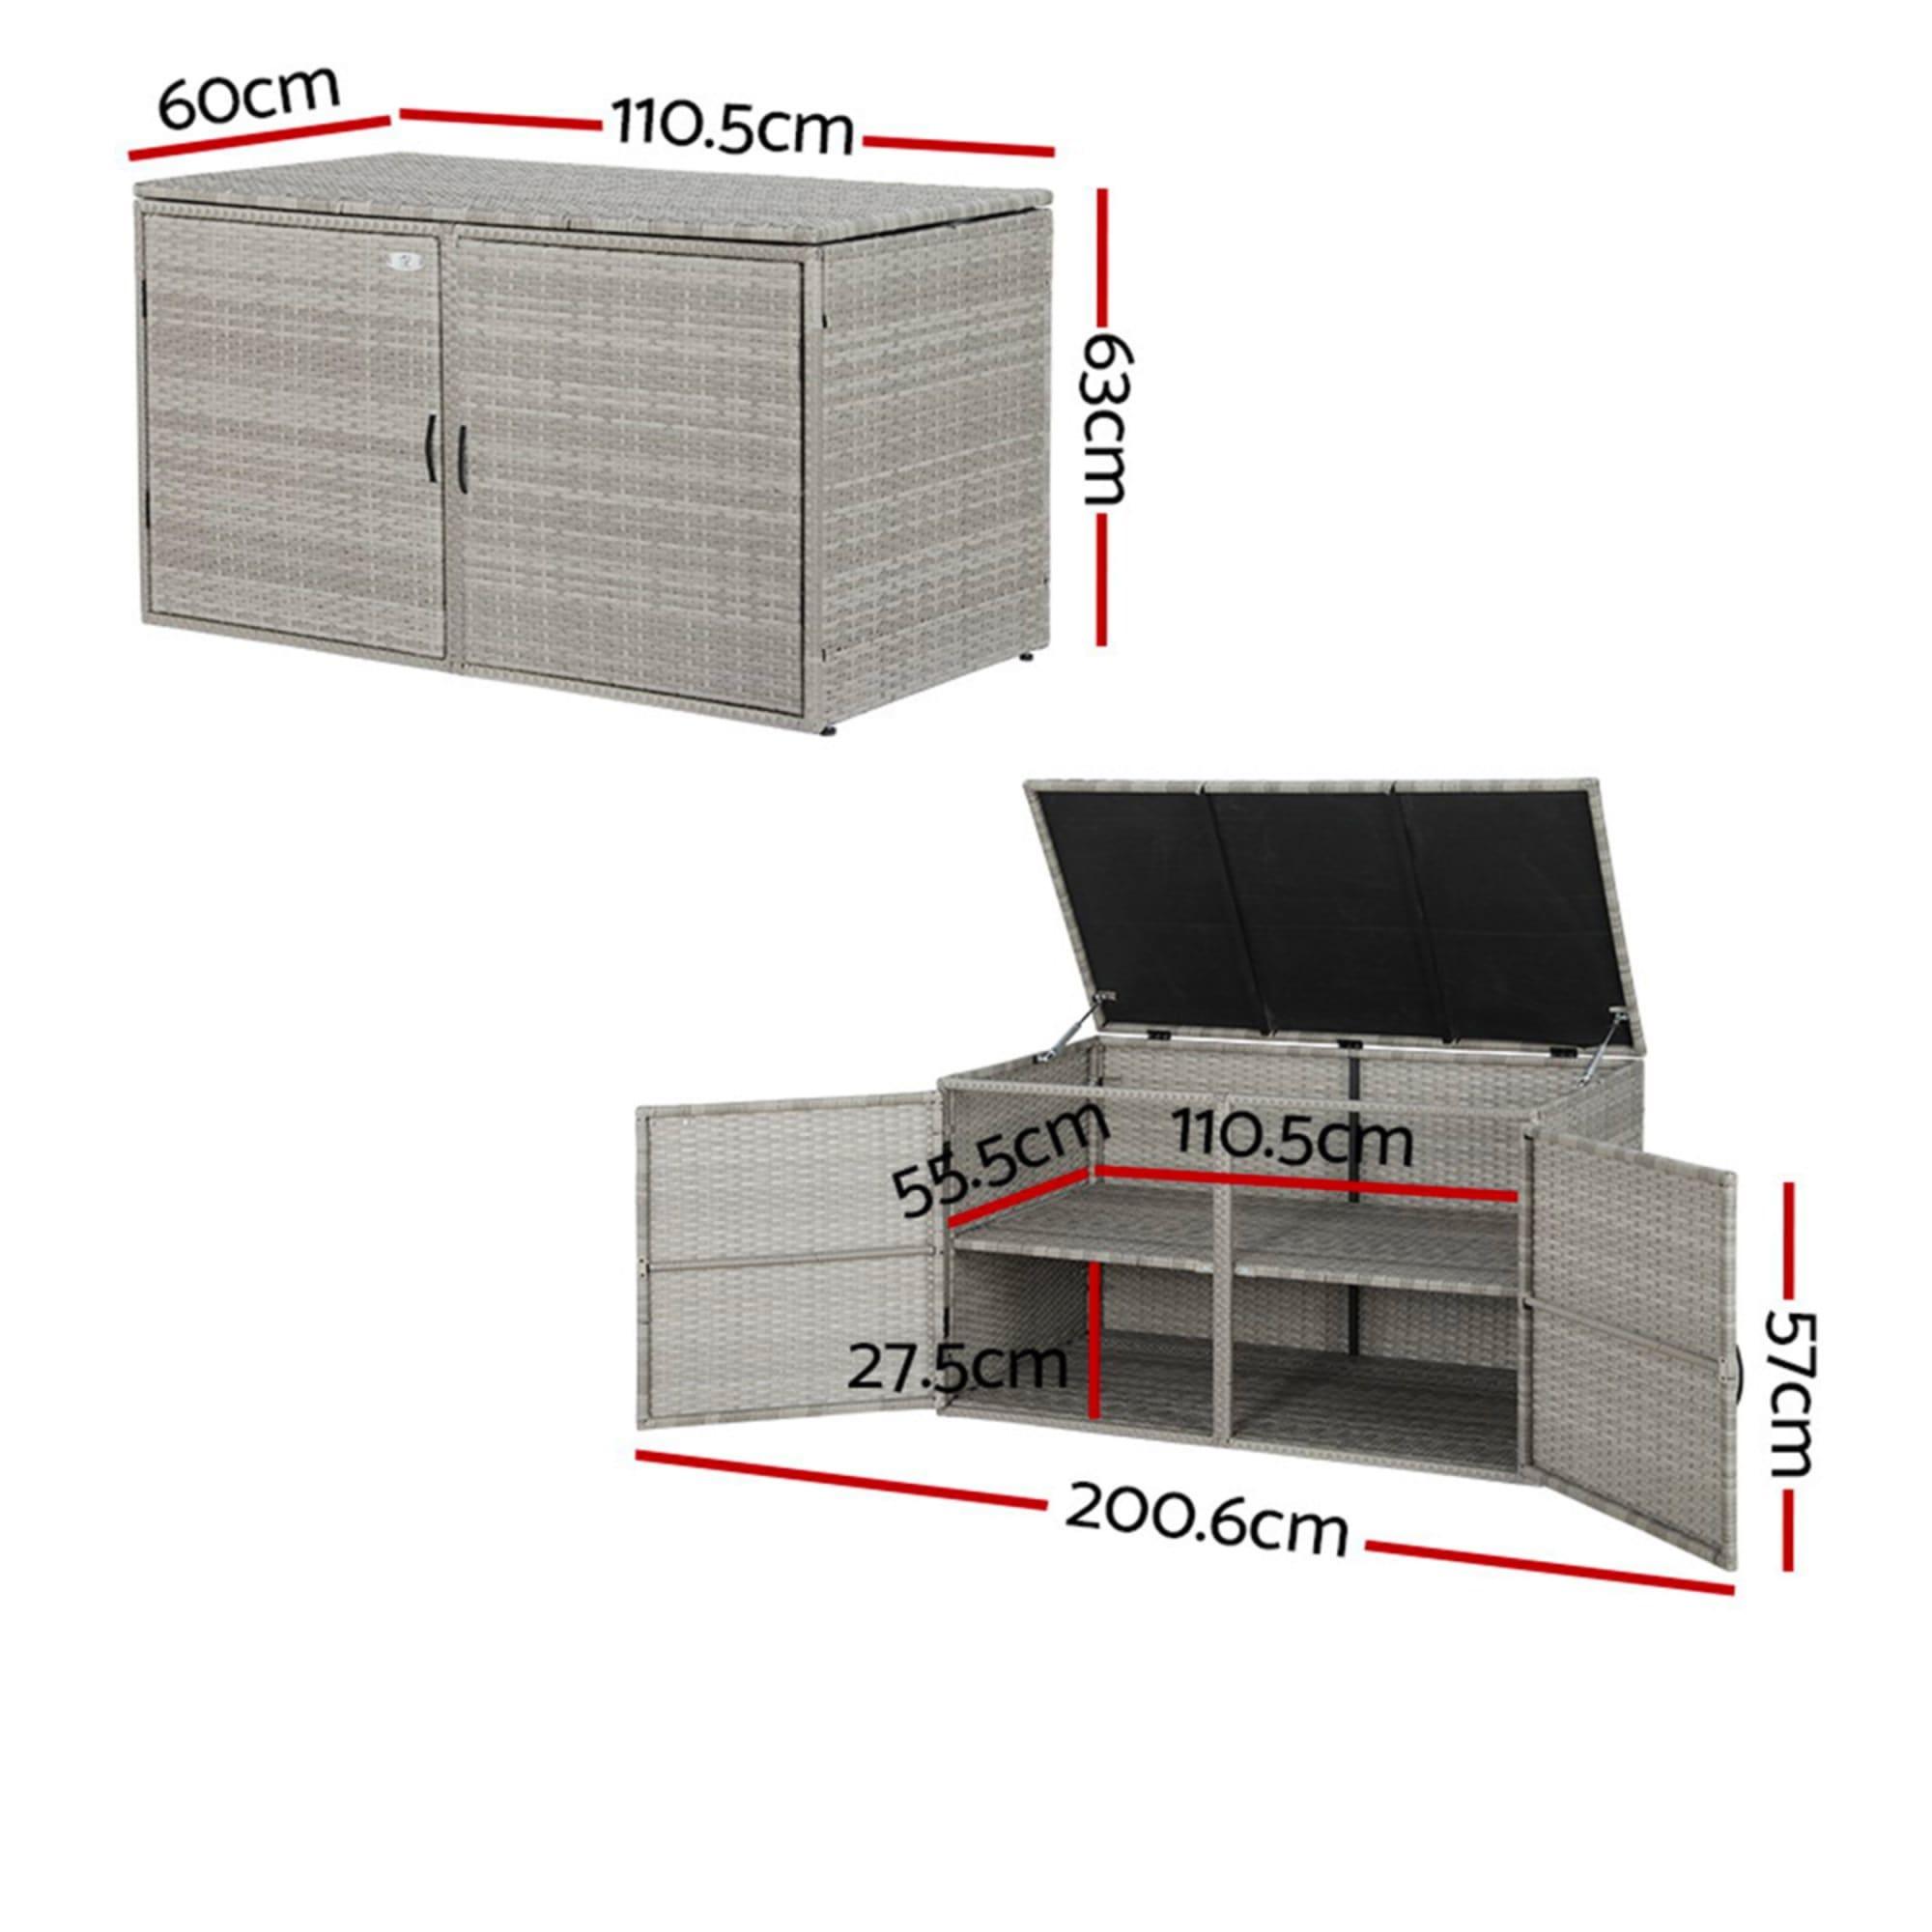 Gardeon Outdoor Storage Box Wicker Shelf Chest 333L Image 3